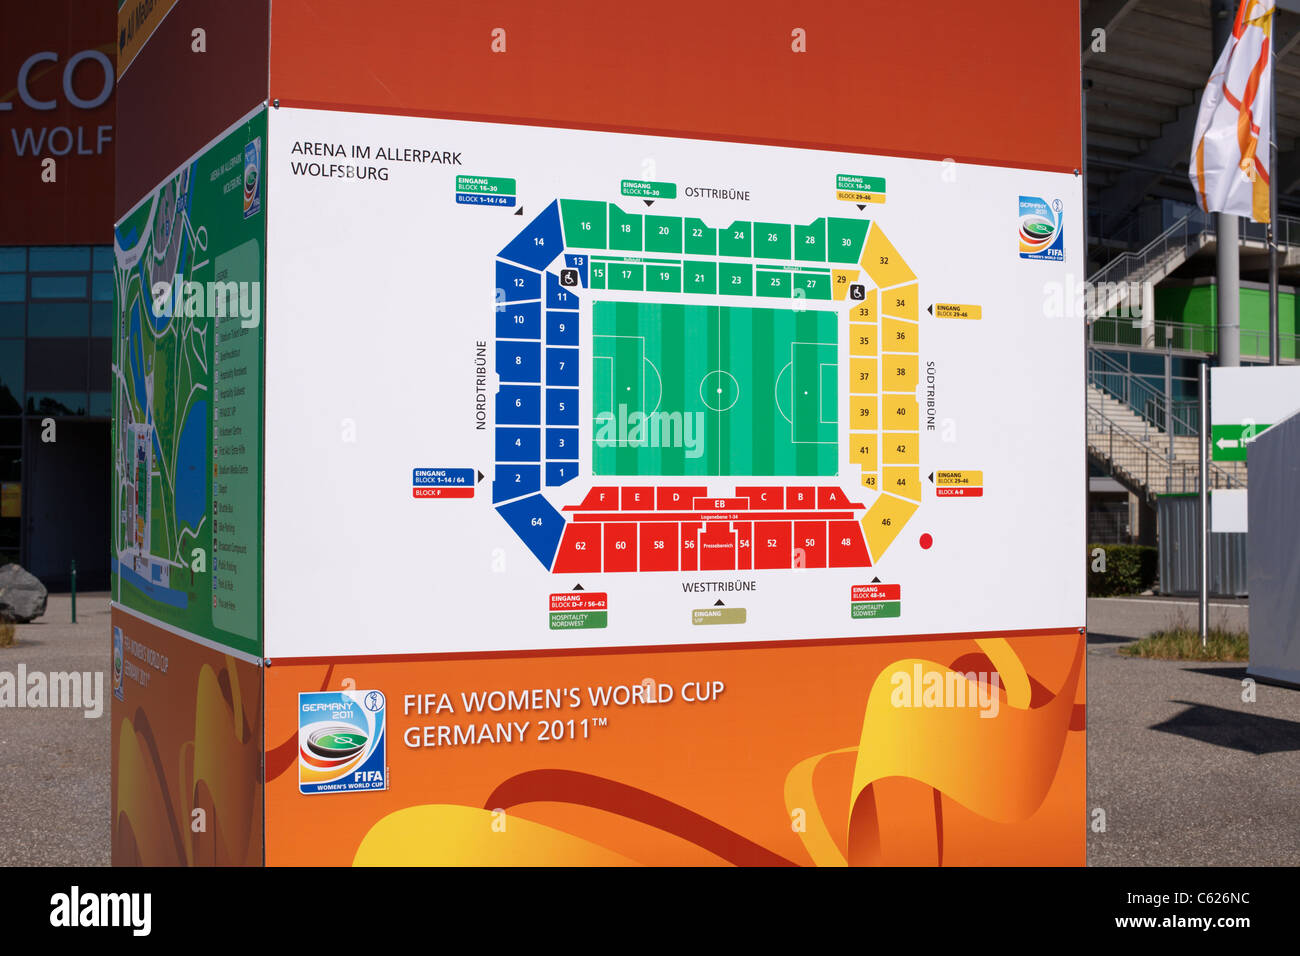 Tu Stadium Seating Chart